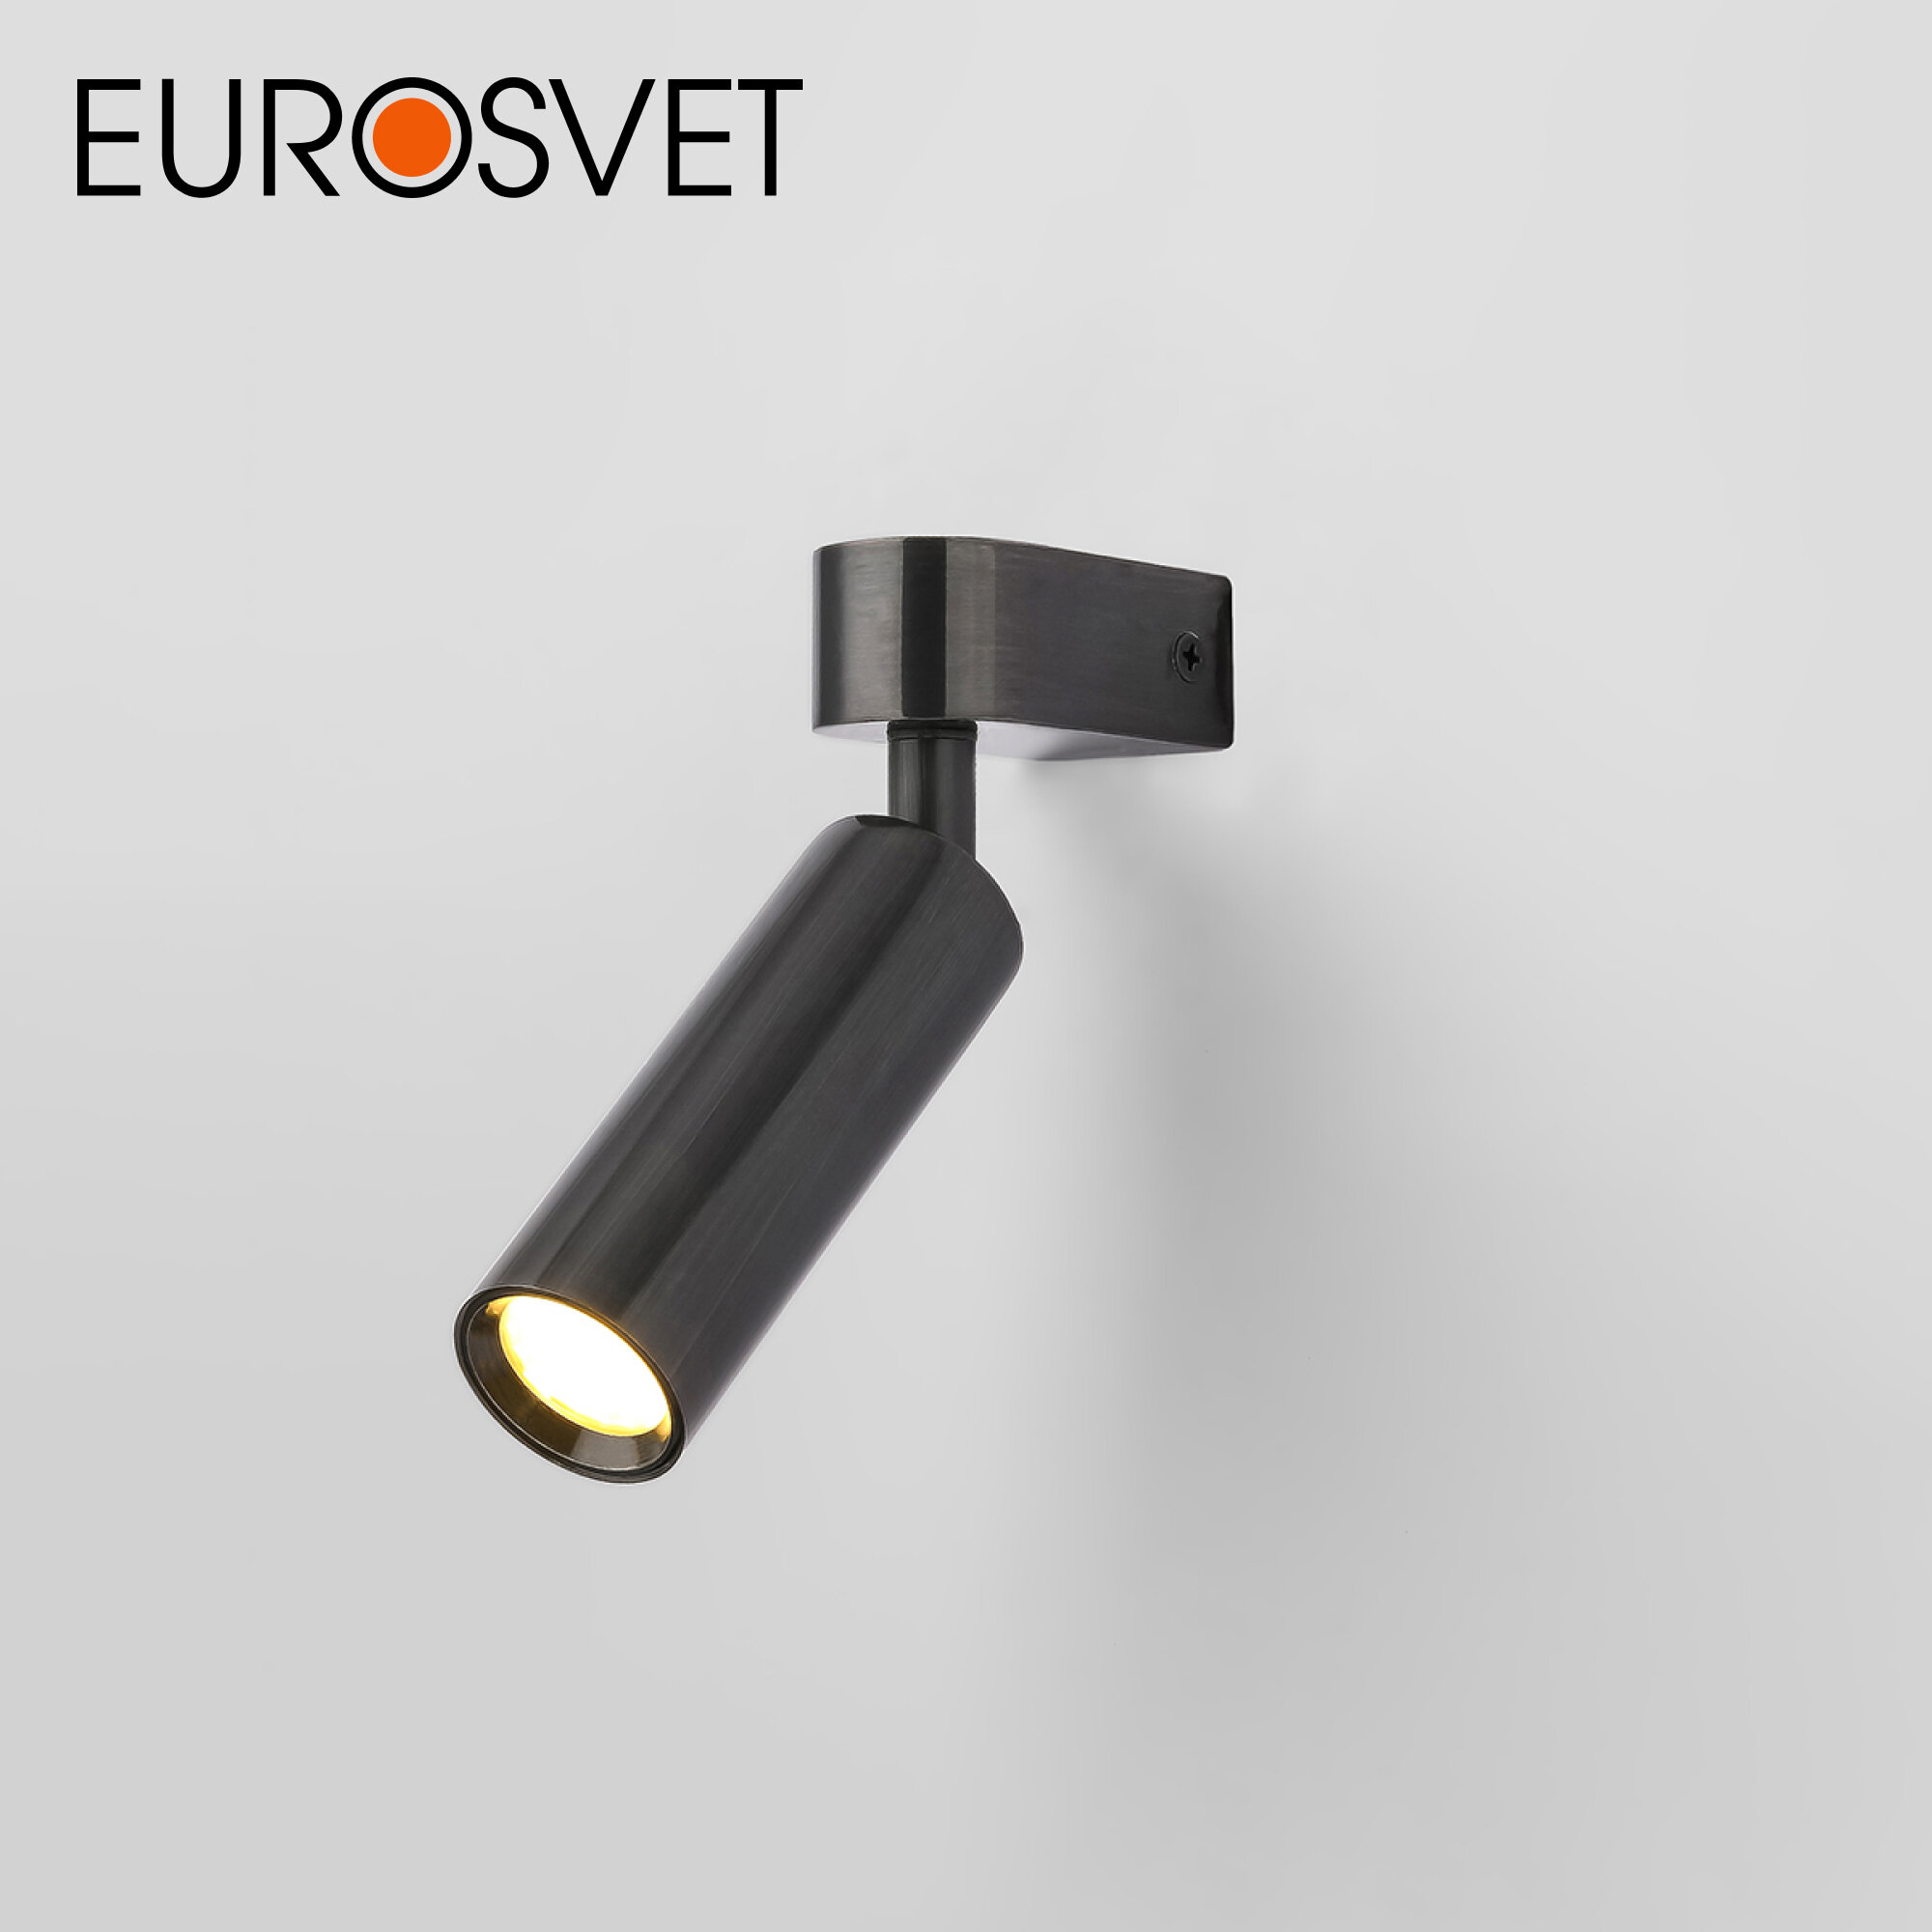 Спот / Настенный светодиодный светильник с поворотным плафоном Eurosvet Pitch 20143/1 LED, 3 Вт, 4200 К, цвет черный жемчуг, IP20